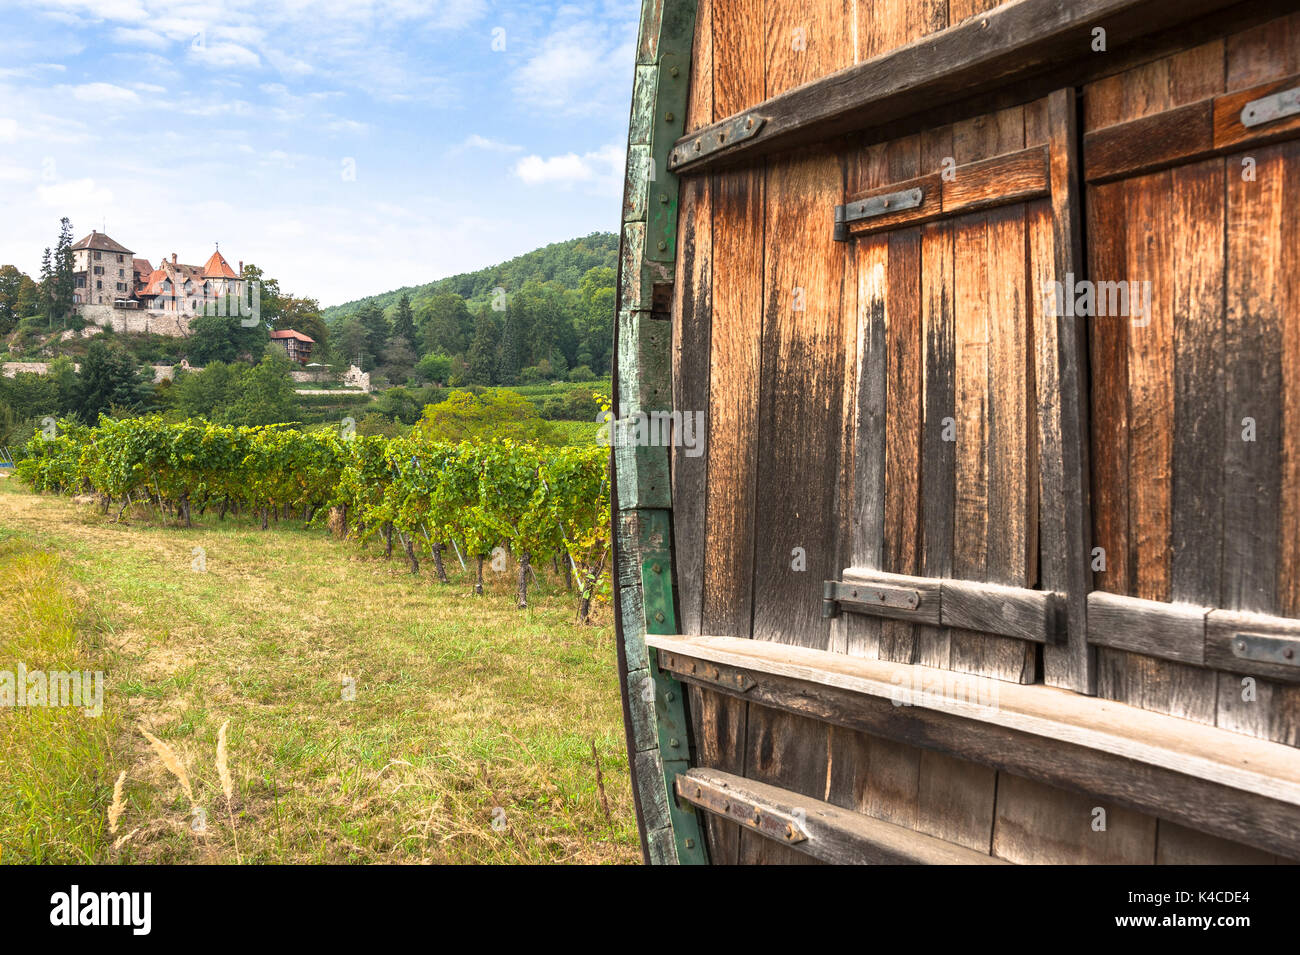 Große Rebe Barrel und schloss die malerische Landschaft der Weinberge, Route der Rebsorten, Elsässisch, Elsass, Frankreich Stockfoto